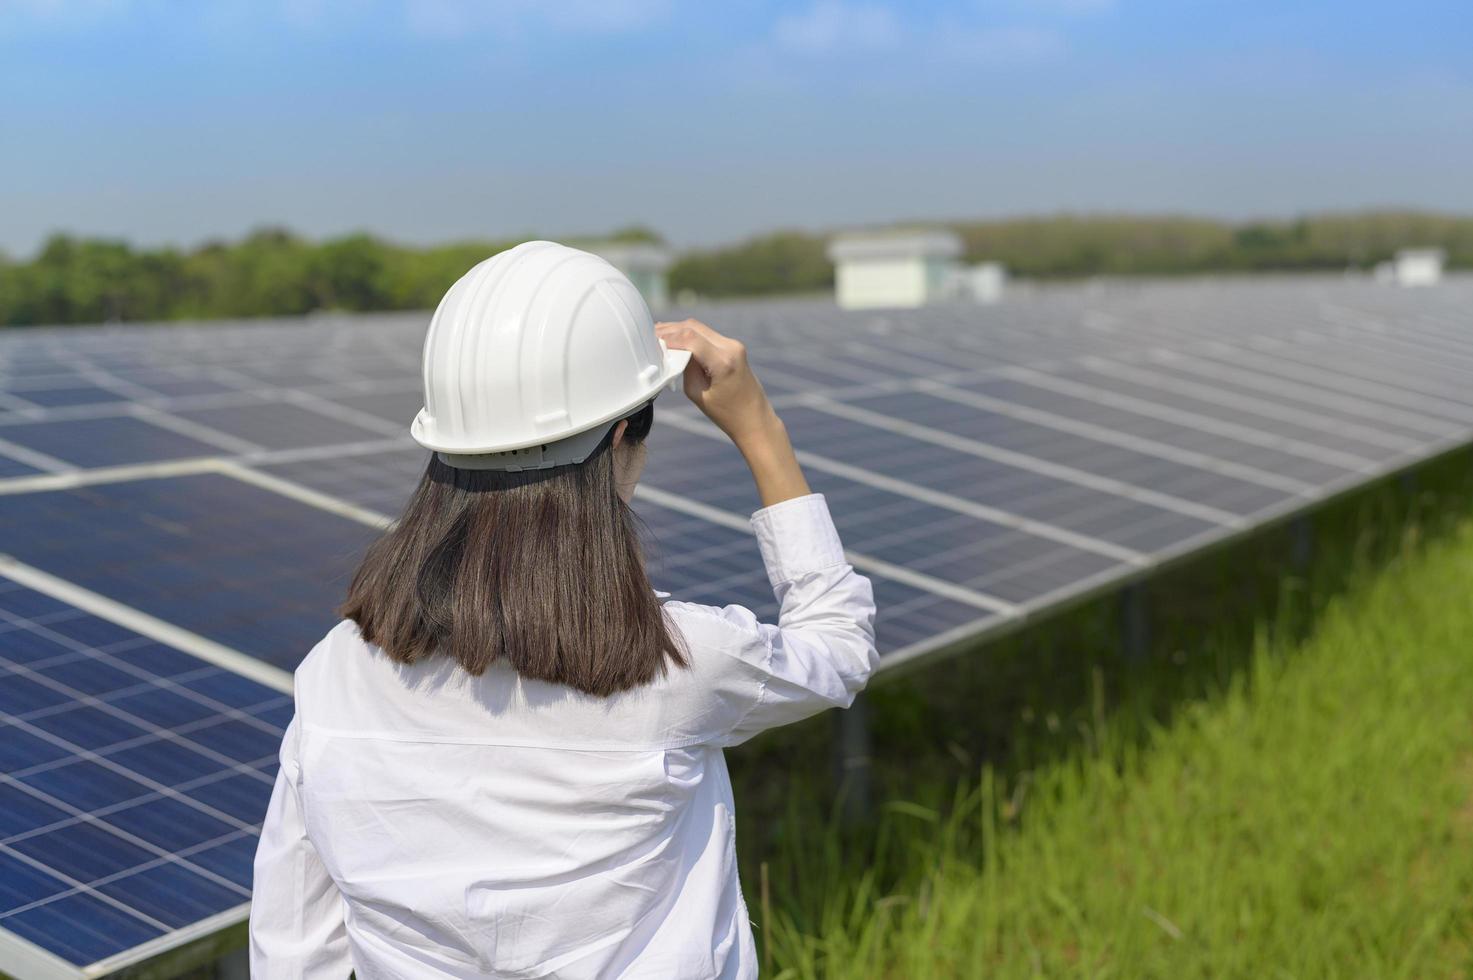 ingénieure portant un casque dans une ferme de cellules photovoltaïques ou un champ de panneaux solaires, énergie écologique et propre. photo